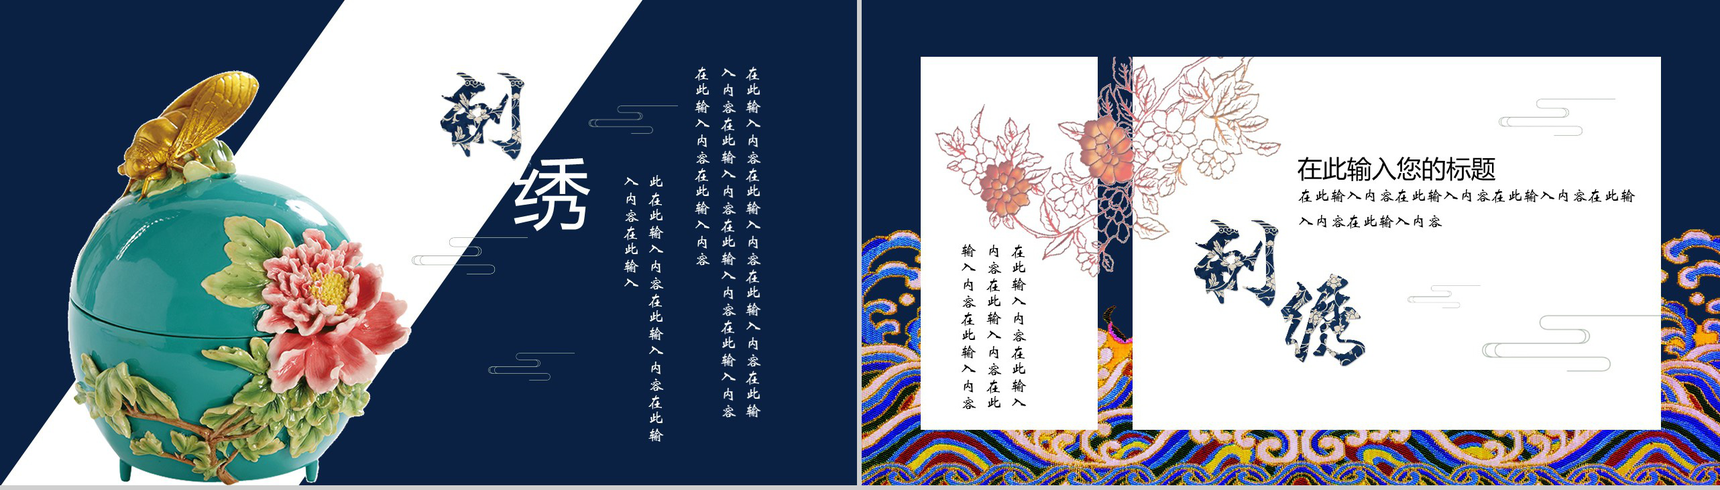 中国之美刺绣传统手艺PPT模板-7